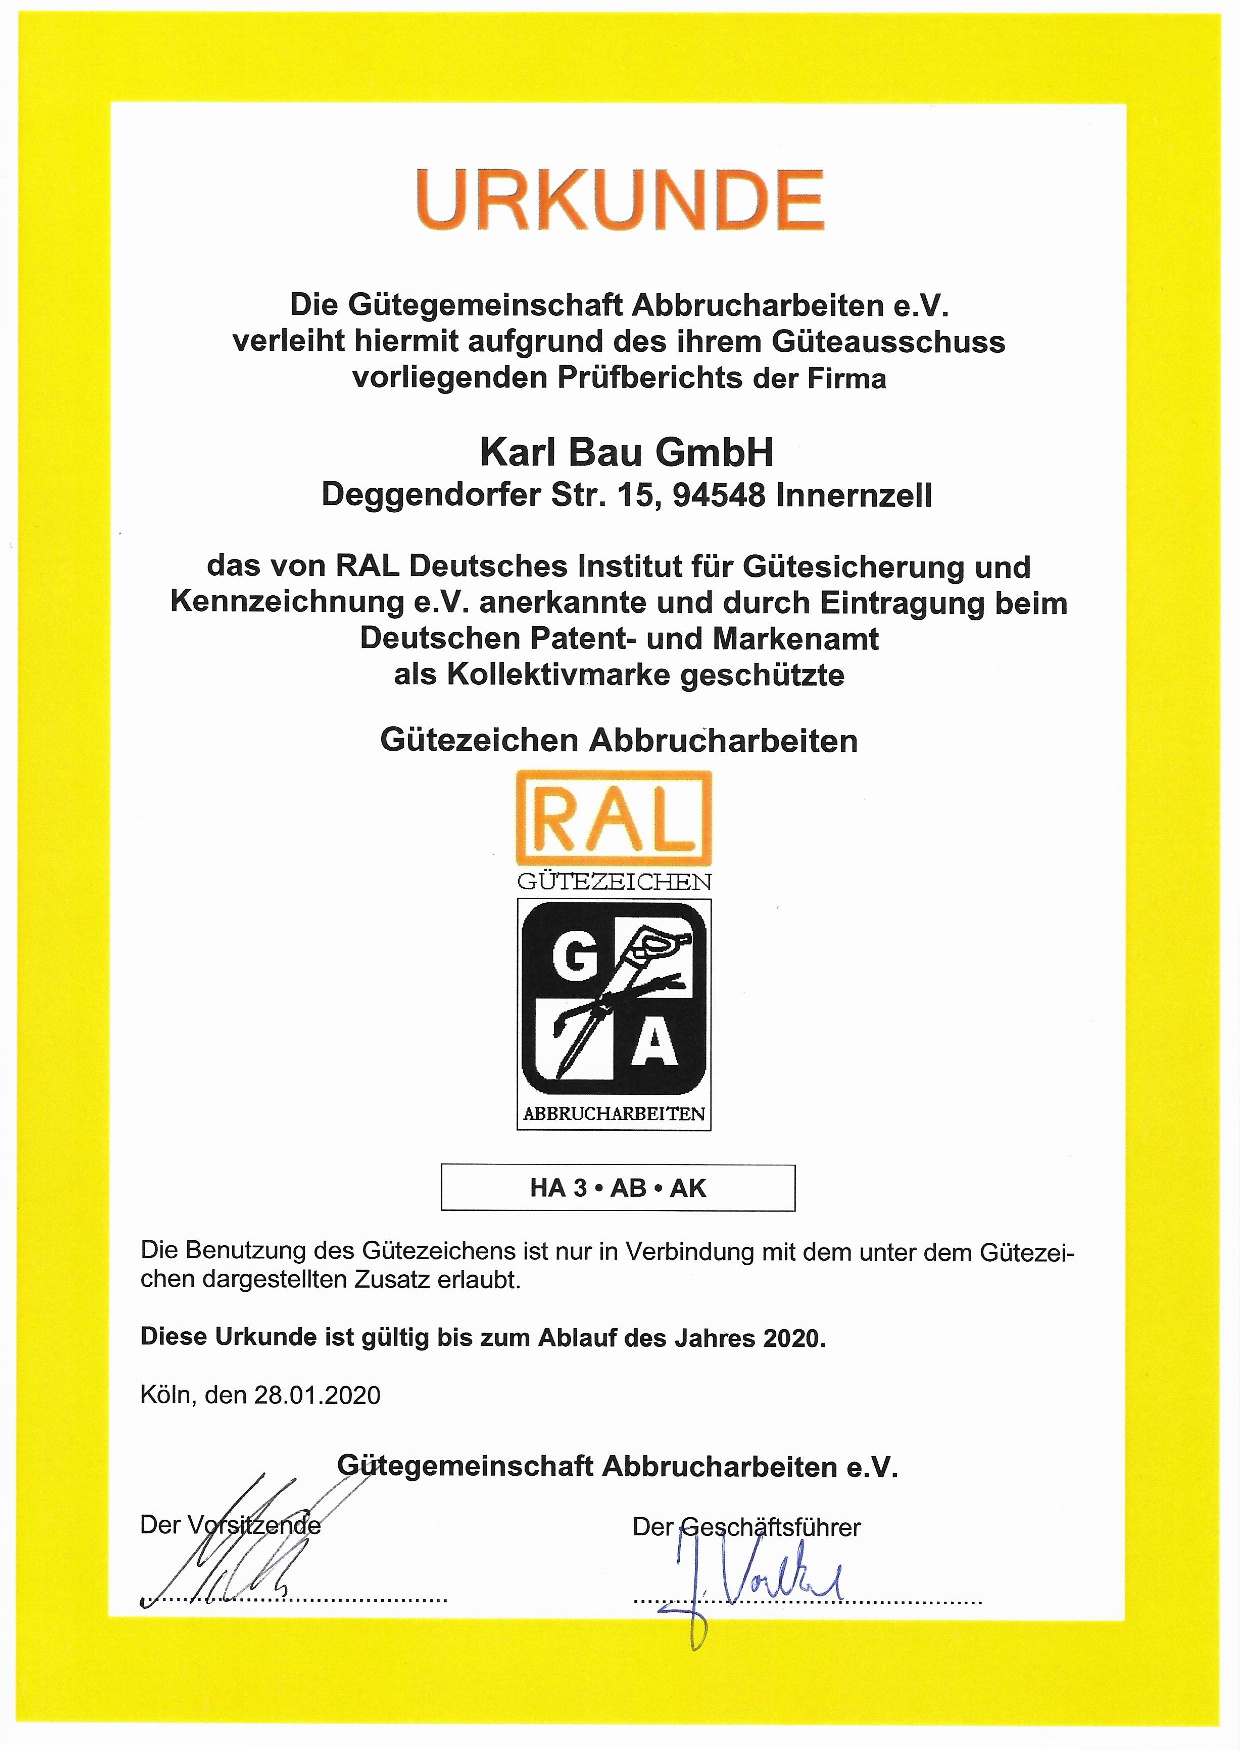 Urkunde RAL Gütezeichen - Abbrucharbeiten, Gültigkeit 2020